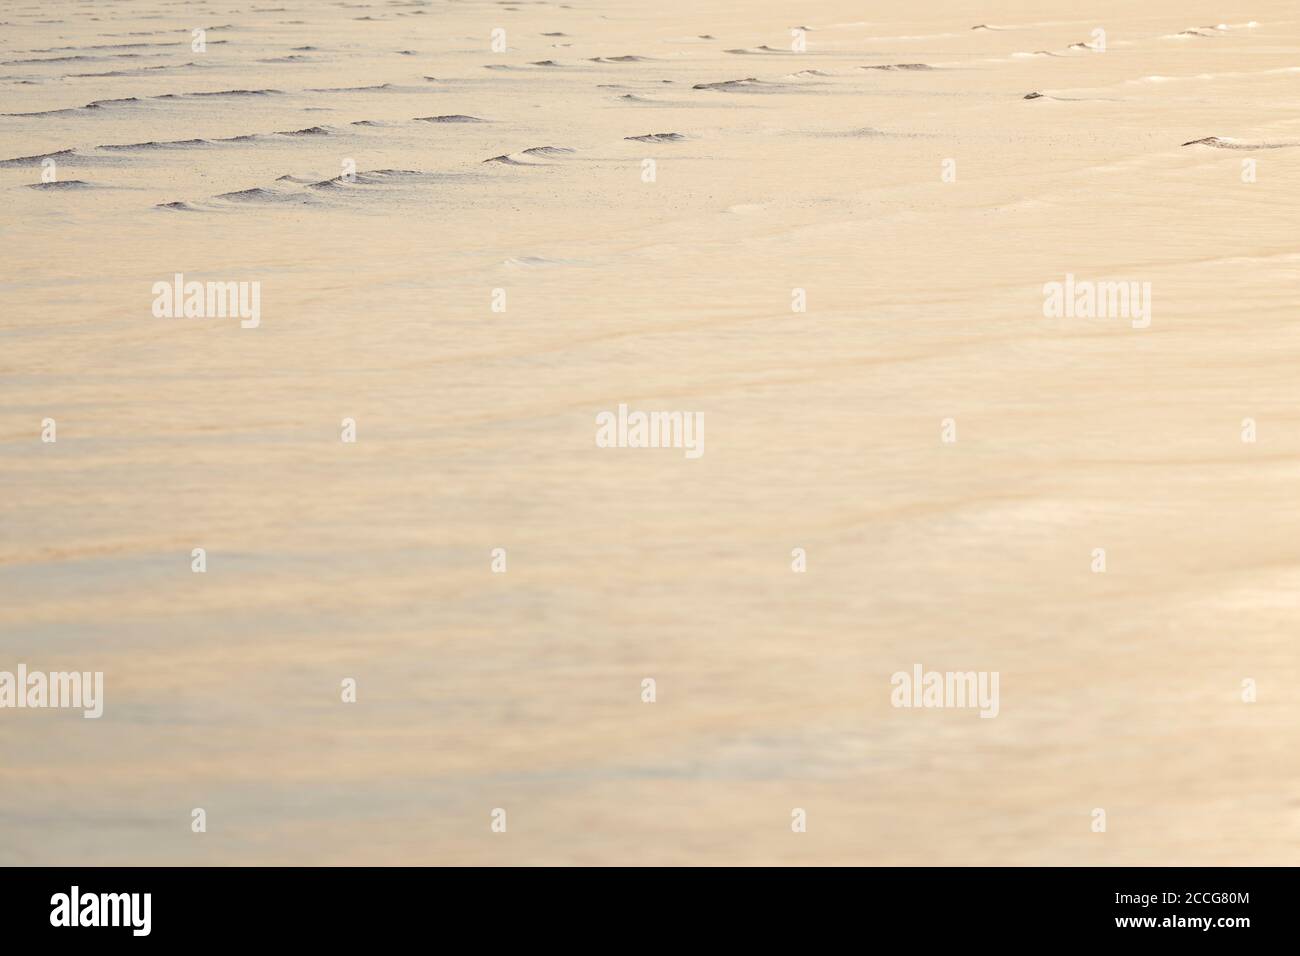 Europa, Deutschland, Niedersachsen, Otterndorf. Zartes Abendlicht auf den flachen Wellen des fließenden Wassers. Stockfoto